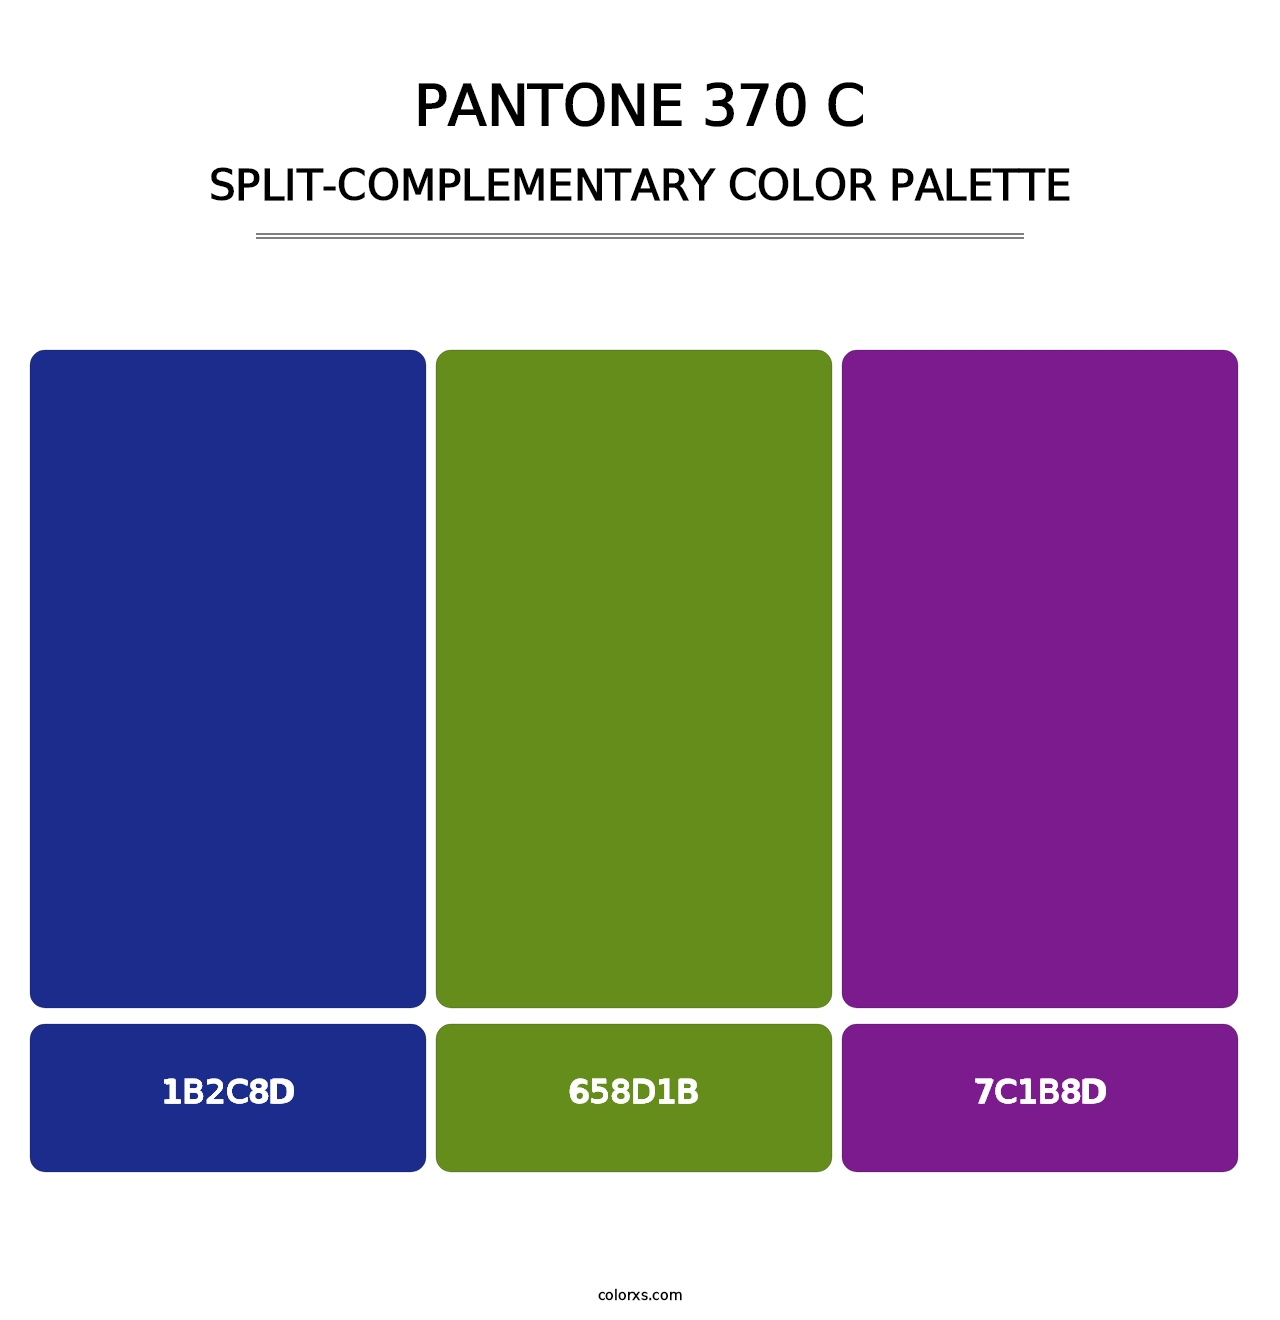 PANTONE 370 C - Split-Complementary Color Palette